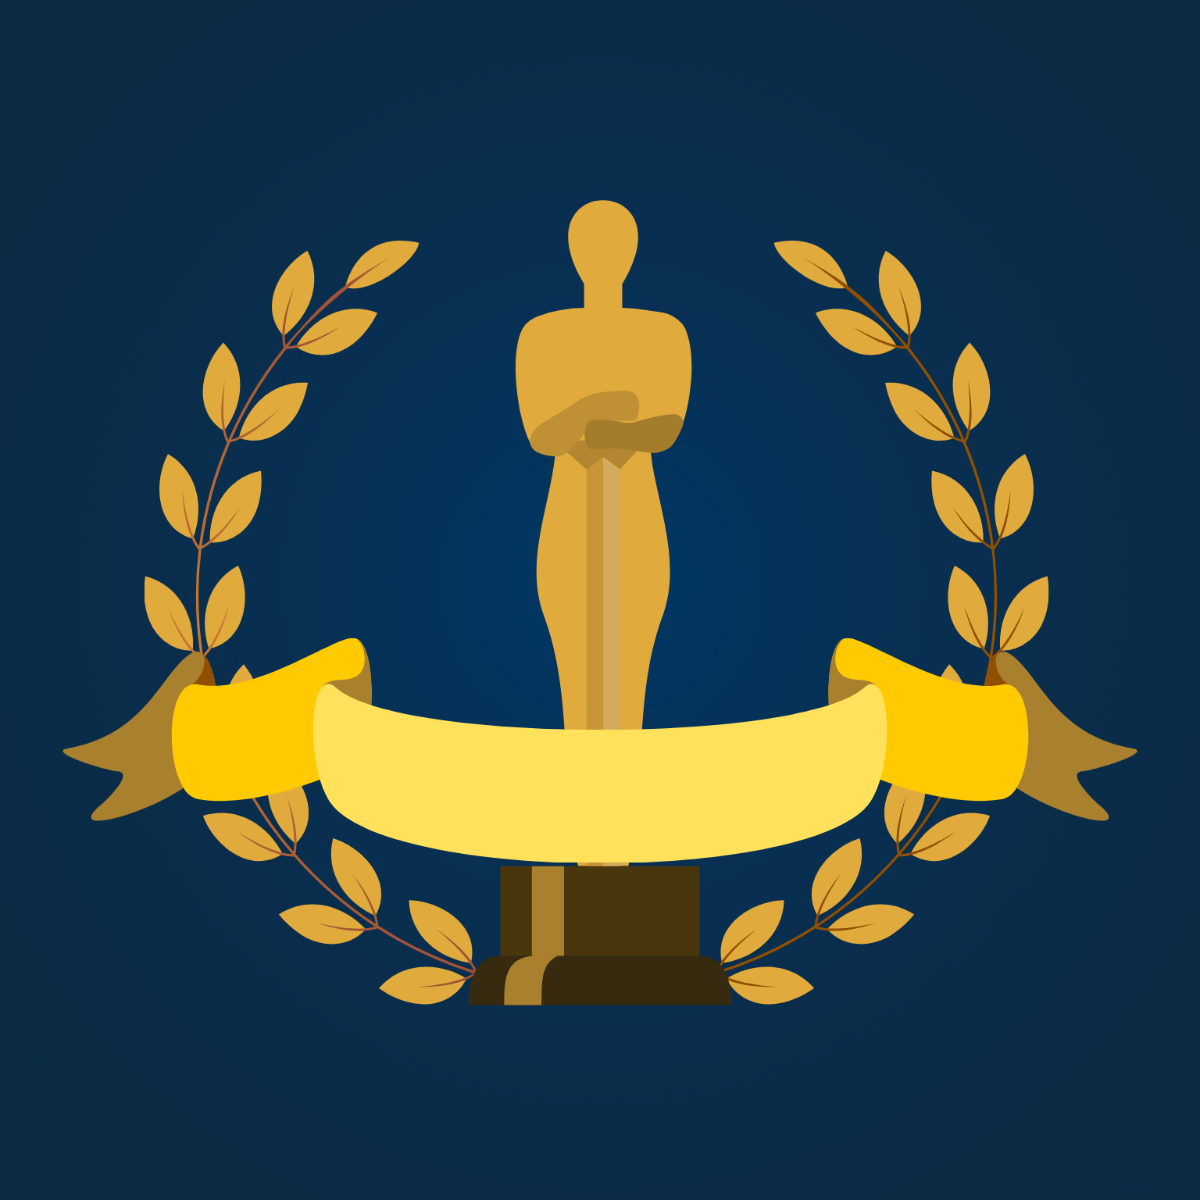 The Academy Awards Vector